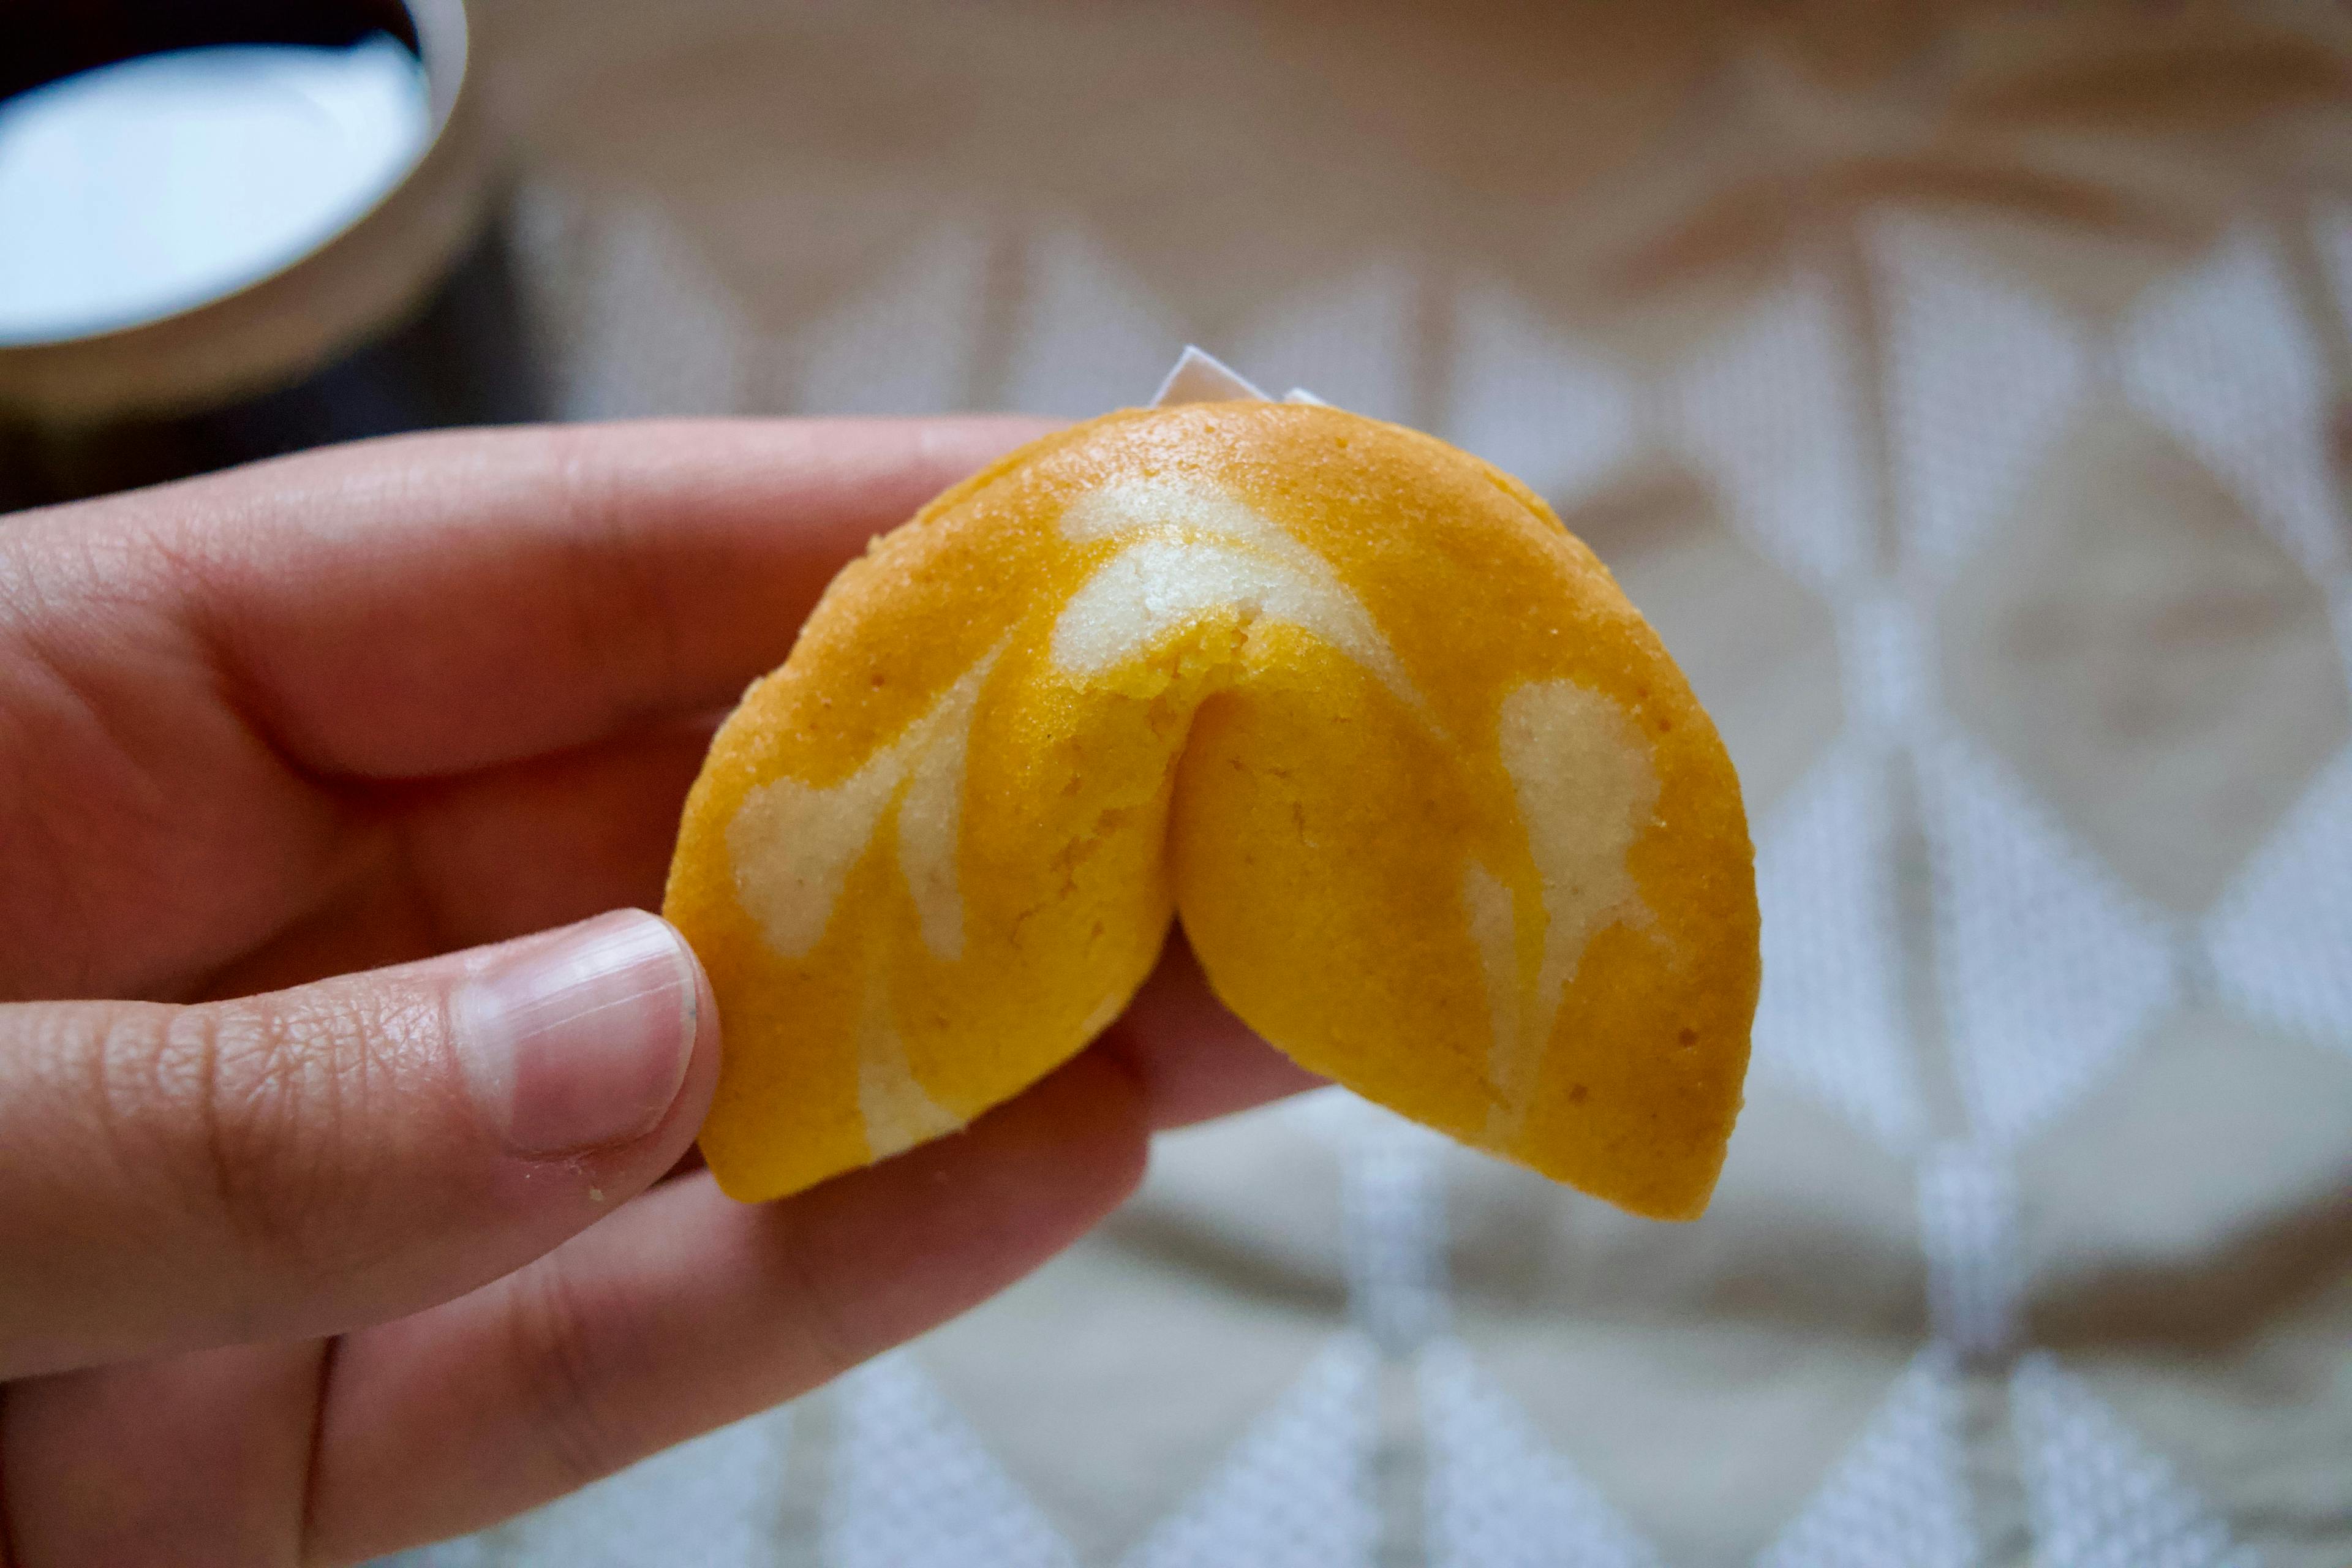 An orange fortune cookie